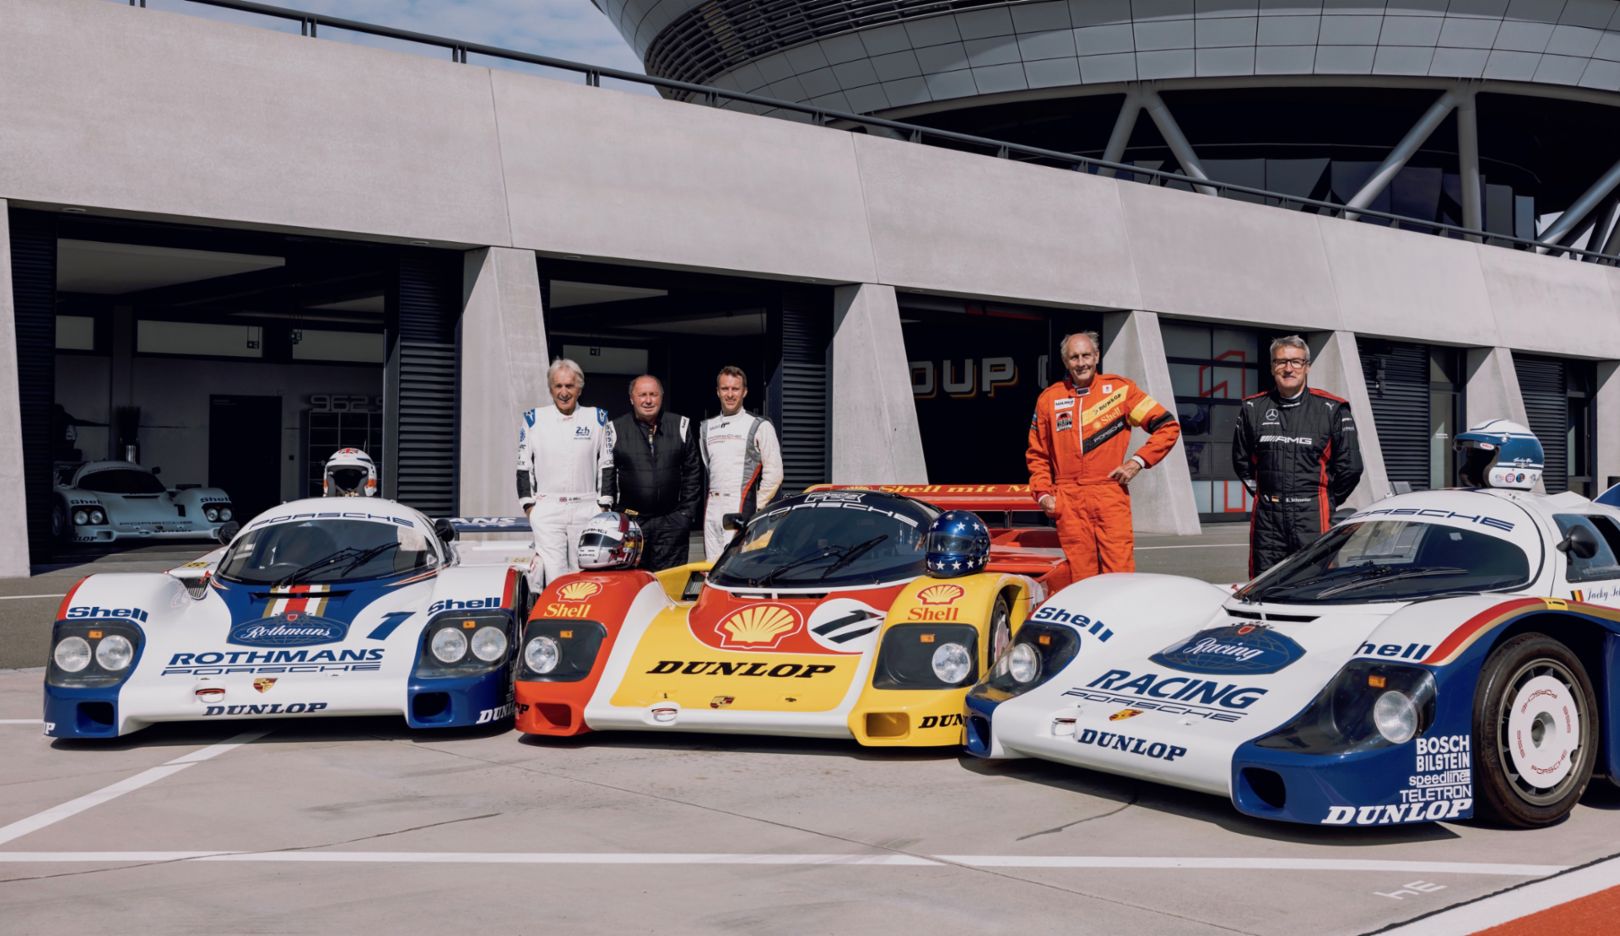 Pilotos de Grupo C: Derek Bell, Jochen Mass, Timo Bernhard, Hans-Joachim Stuck, Bernd Schneider (i-d), 2022, Porsche AG